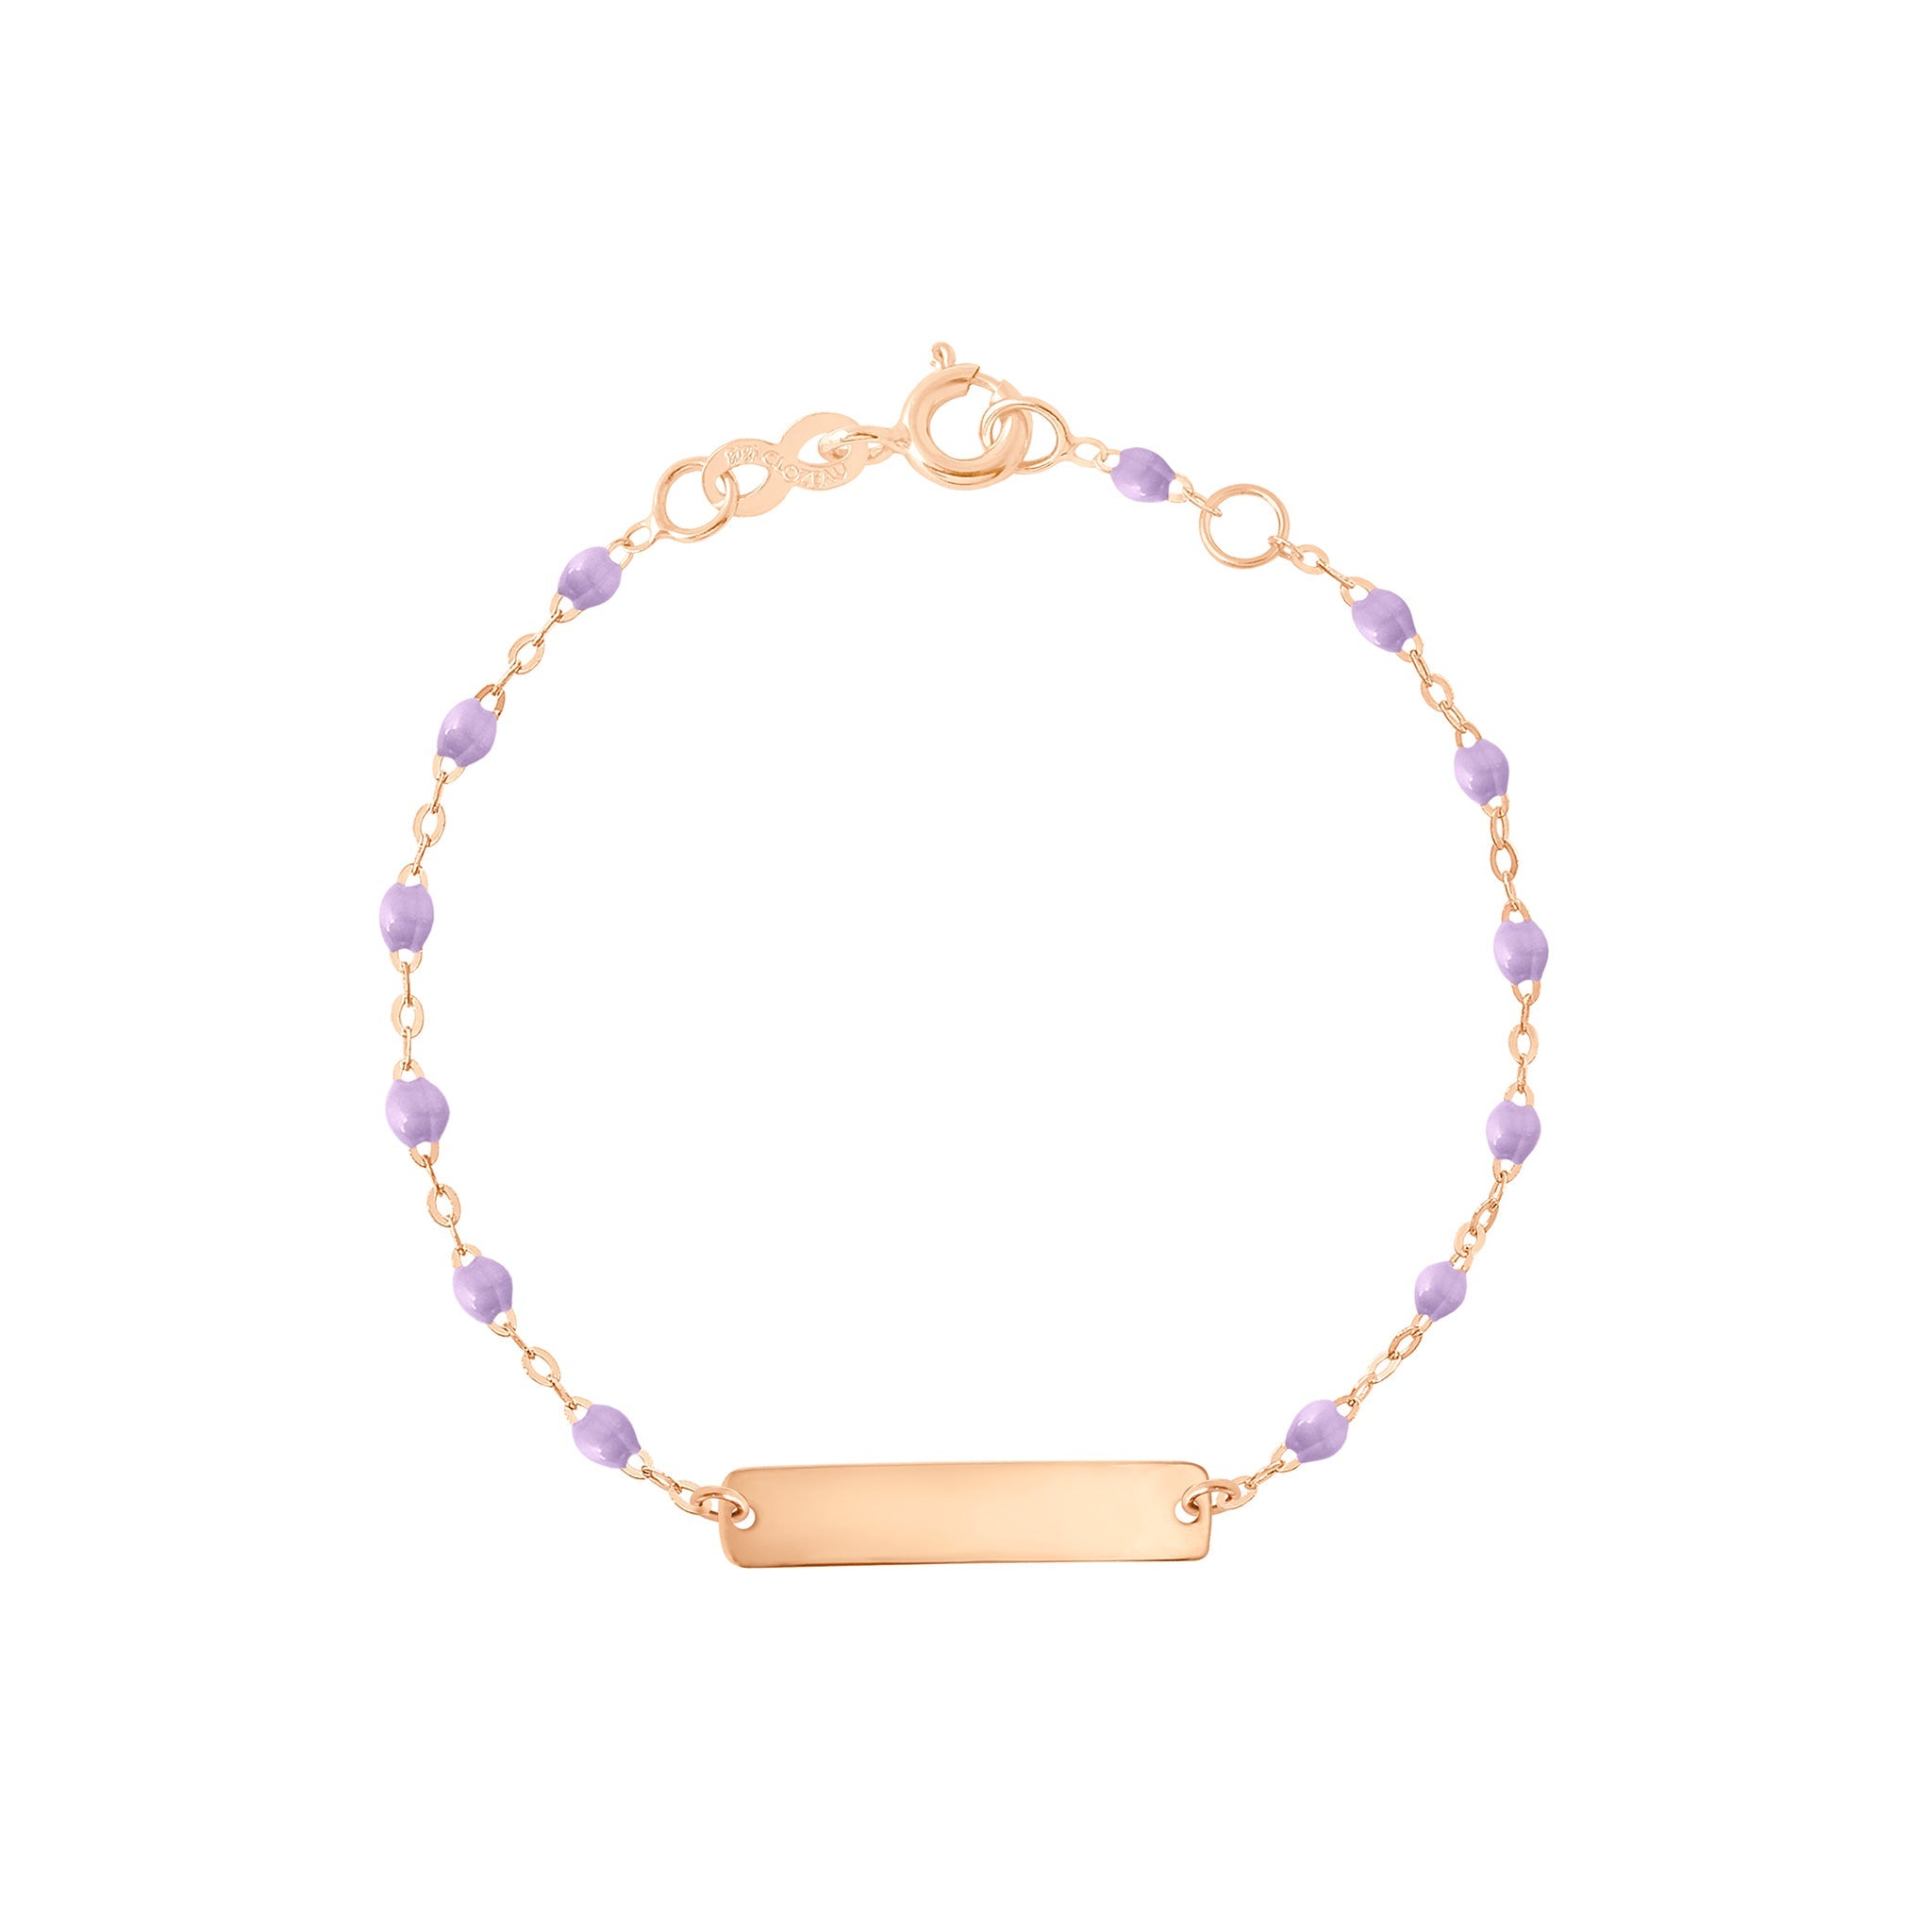 Bracelet parme Little Gigi, plaque rectangle, or rose, 13 cm little gigi Référence :  b3lg001r1013xx -1